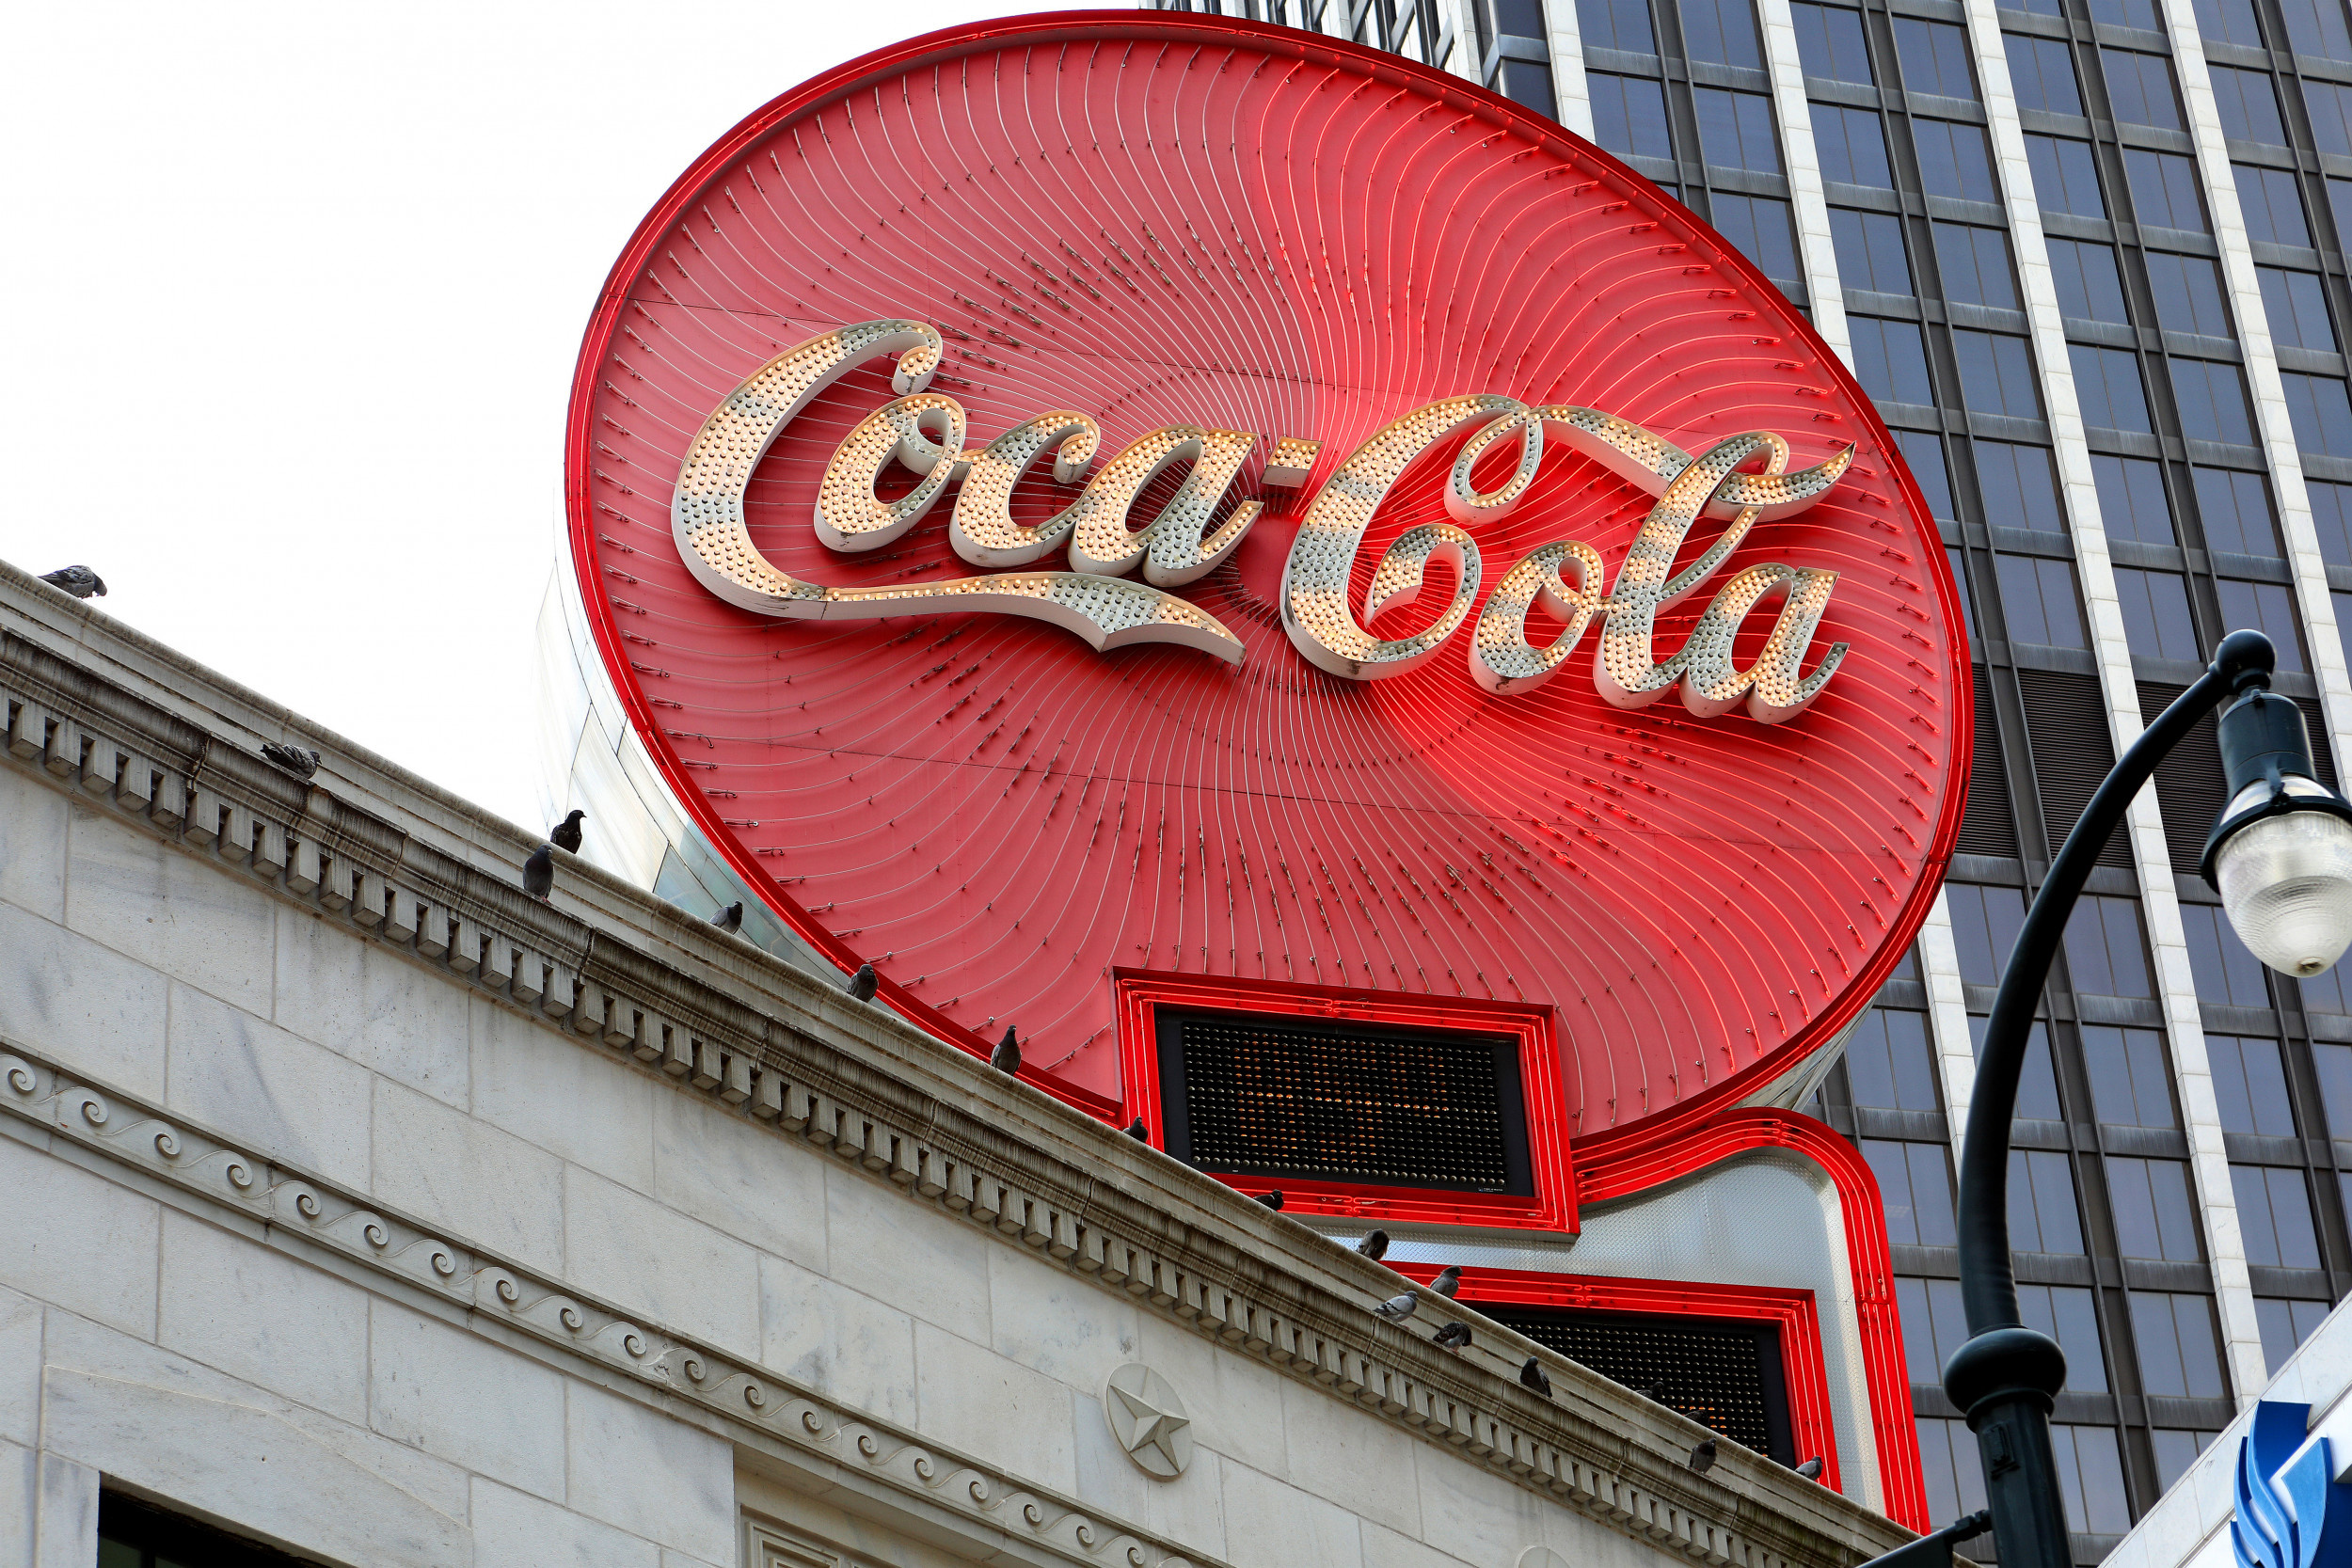 World of Coca-Cola, Atlanta travels, Coca-Cola boycott, 2500x1670 HD Desktop